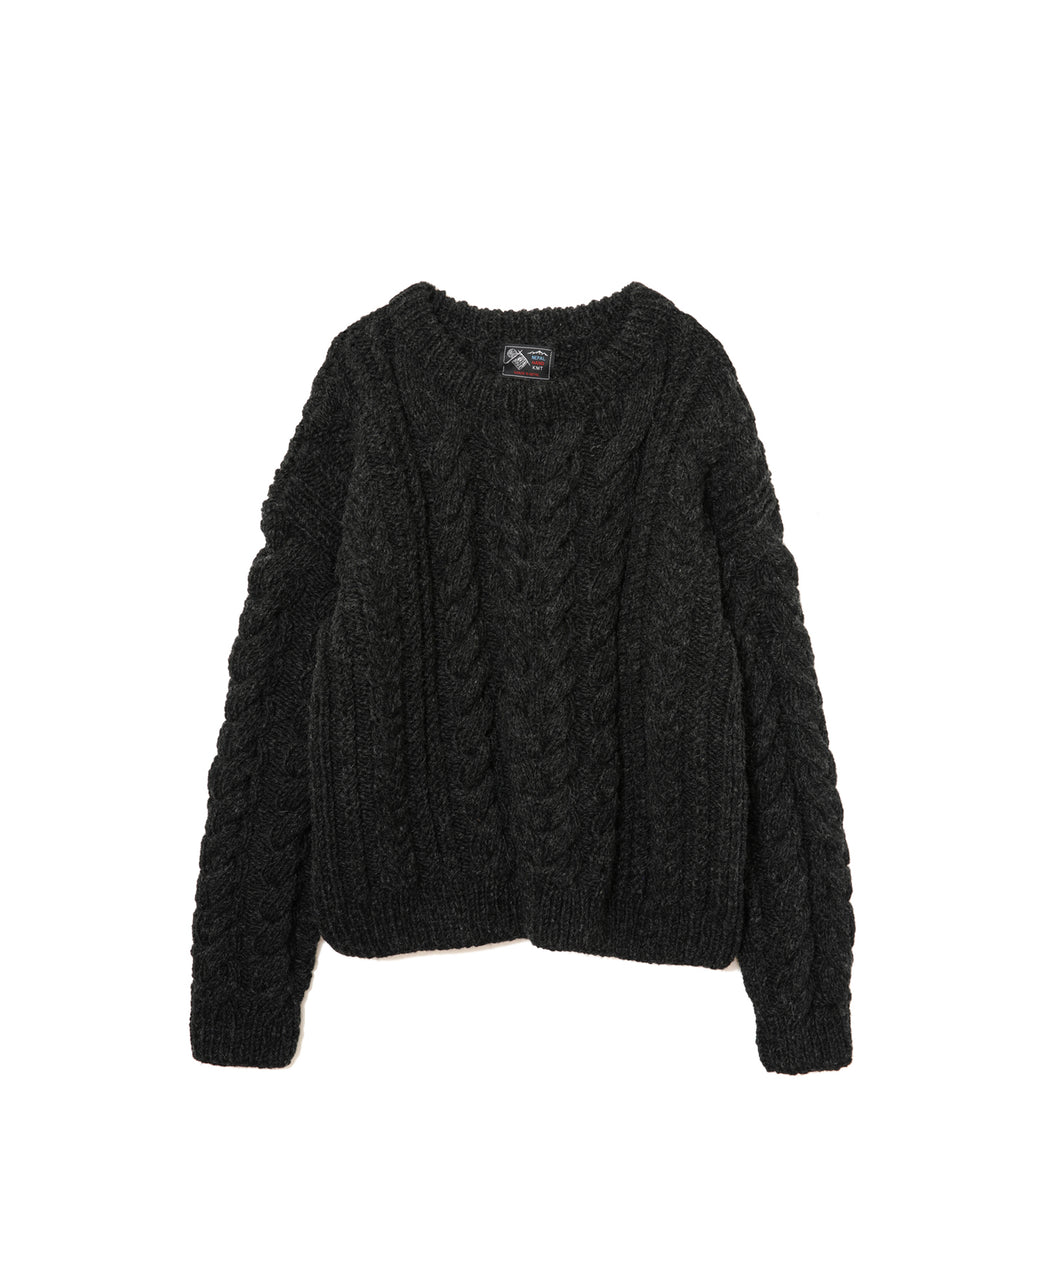 9,599円アメリカンラグシーで購入したニットセーターです。全く着る機会がなくほぼ新品です。